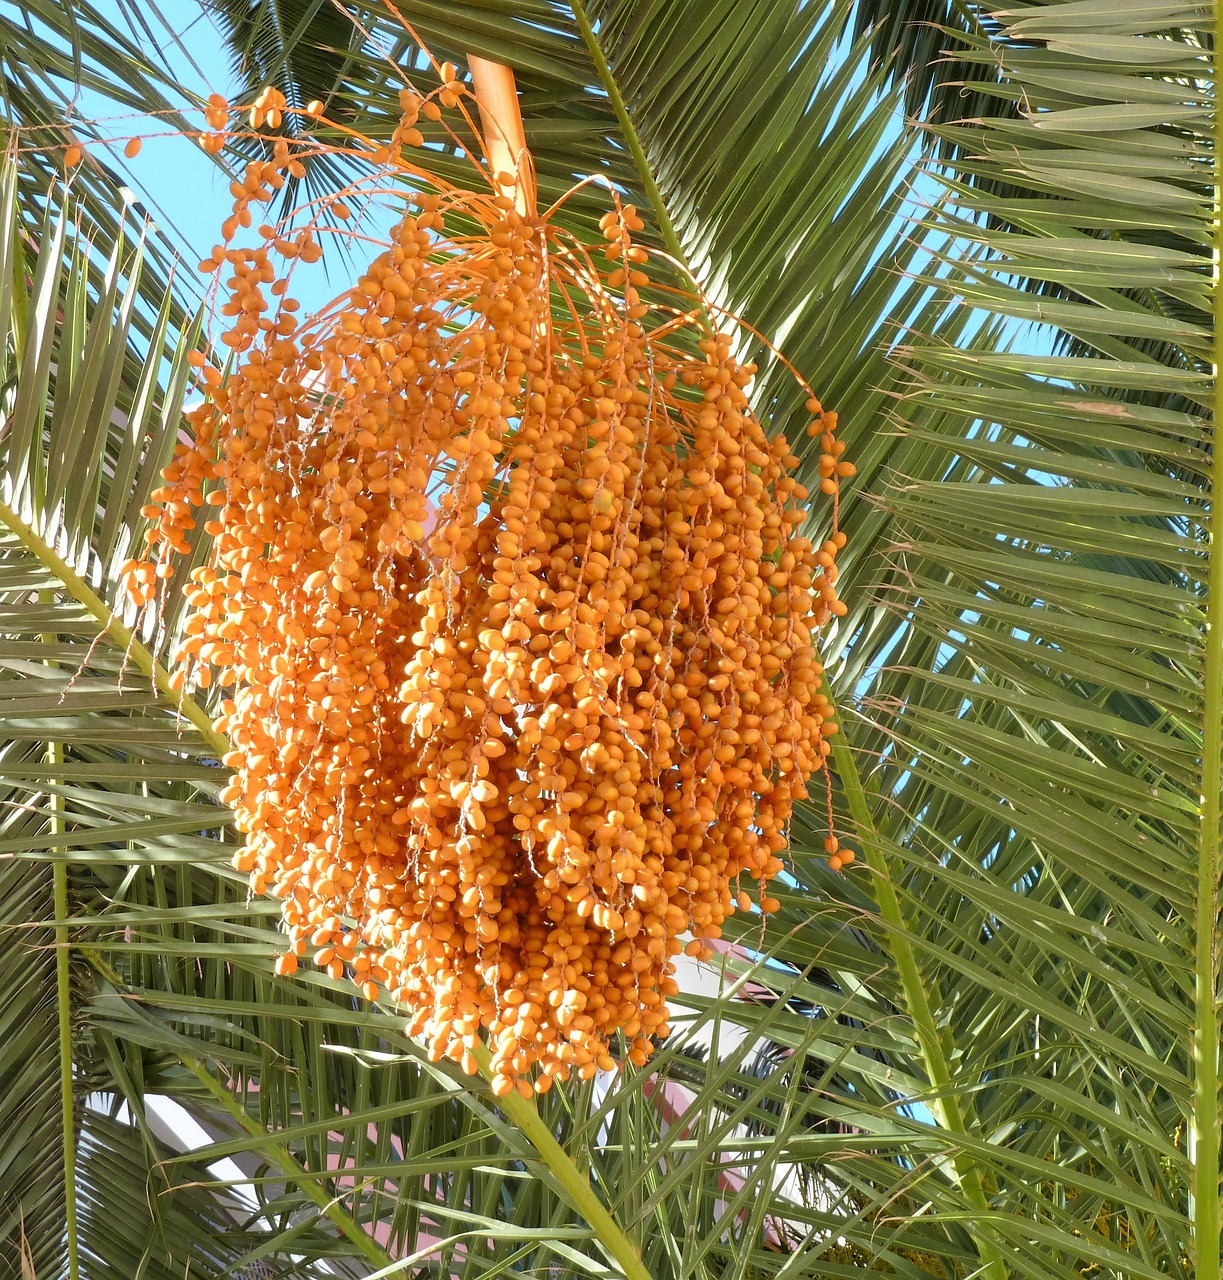 Image - fruits dates orange palm tree